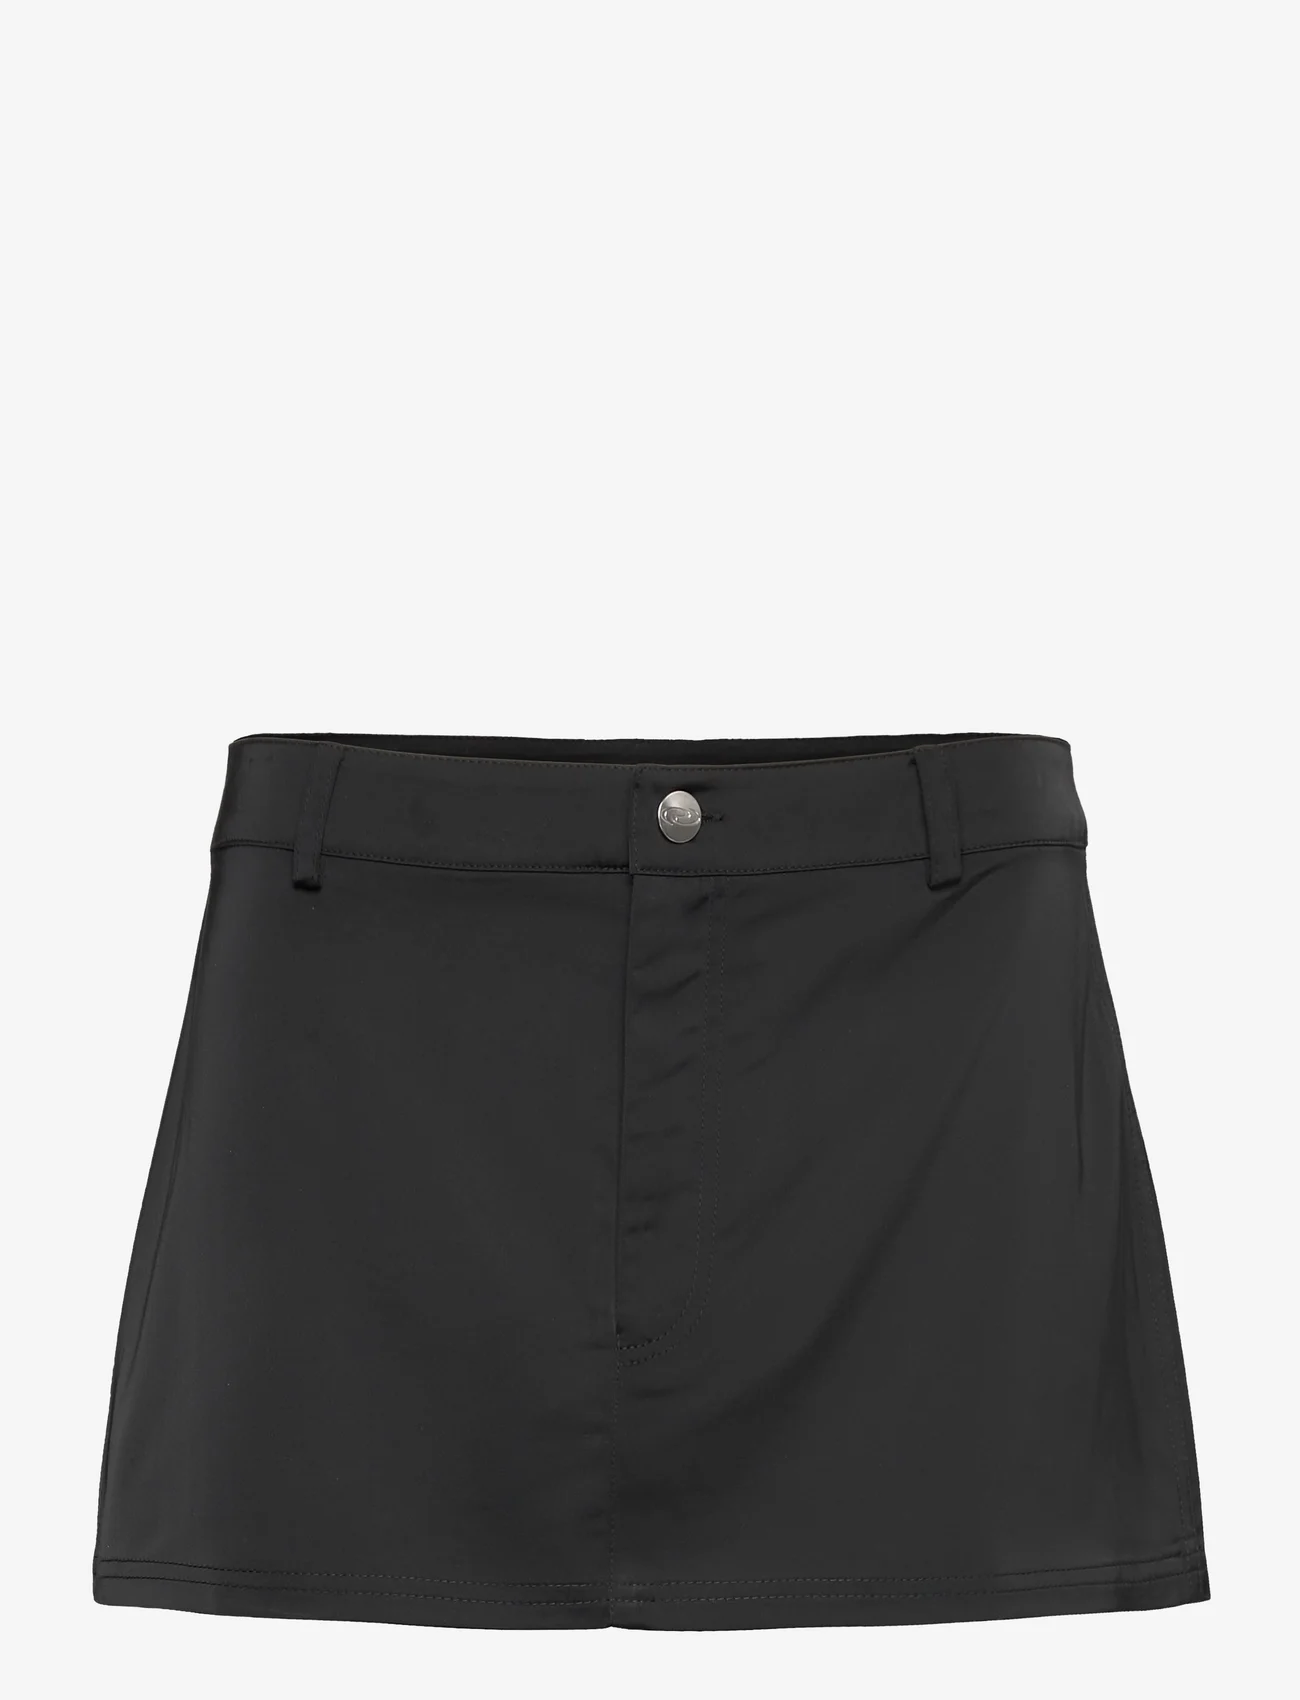 Résumé - PoppyRS Skirt - korte nederdele - black - 0